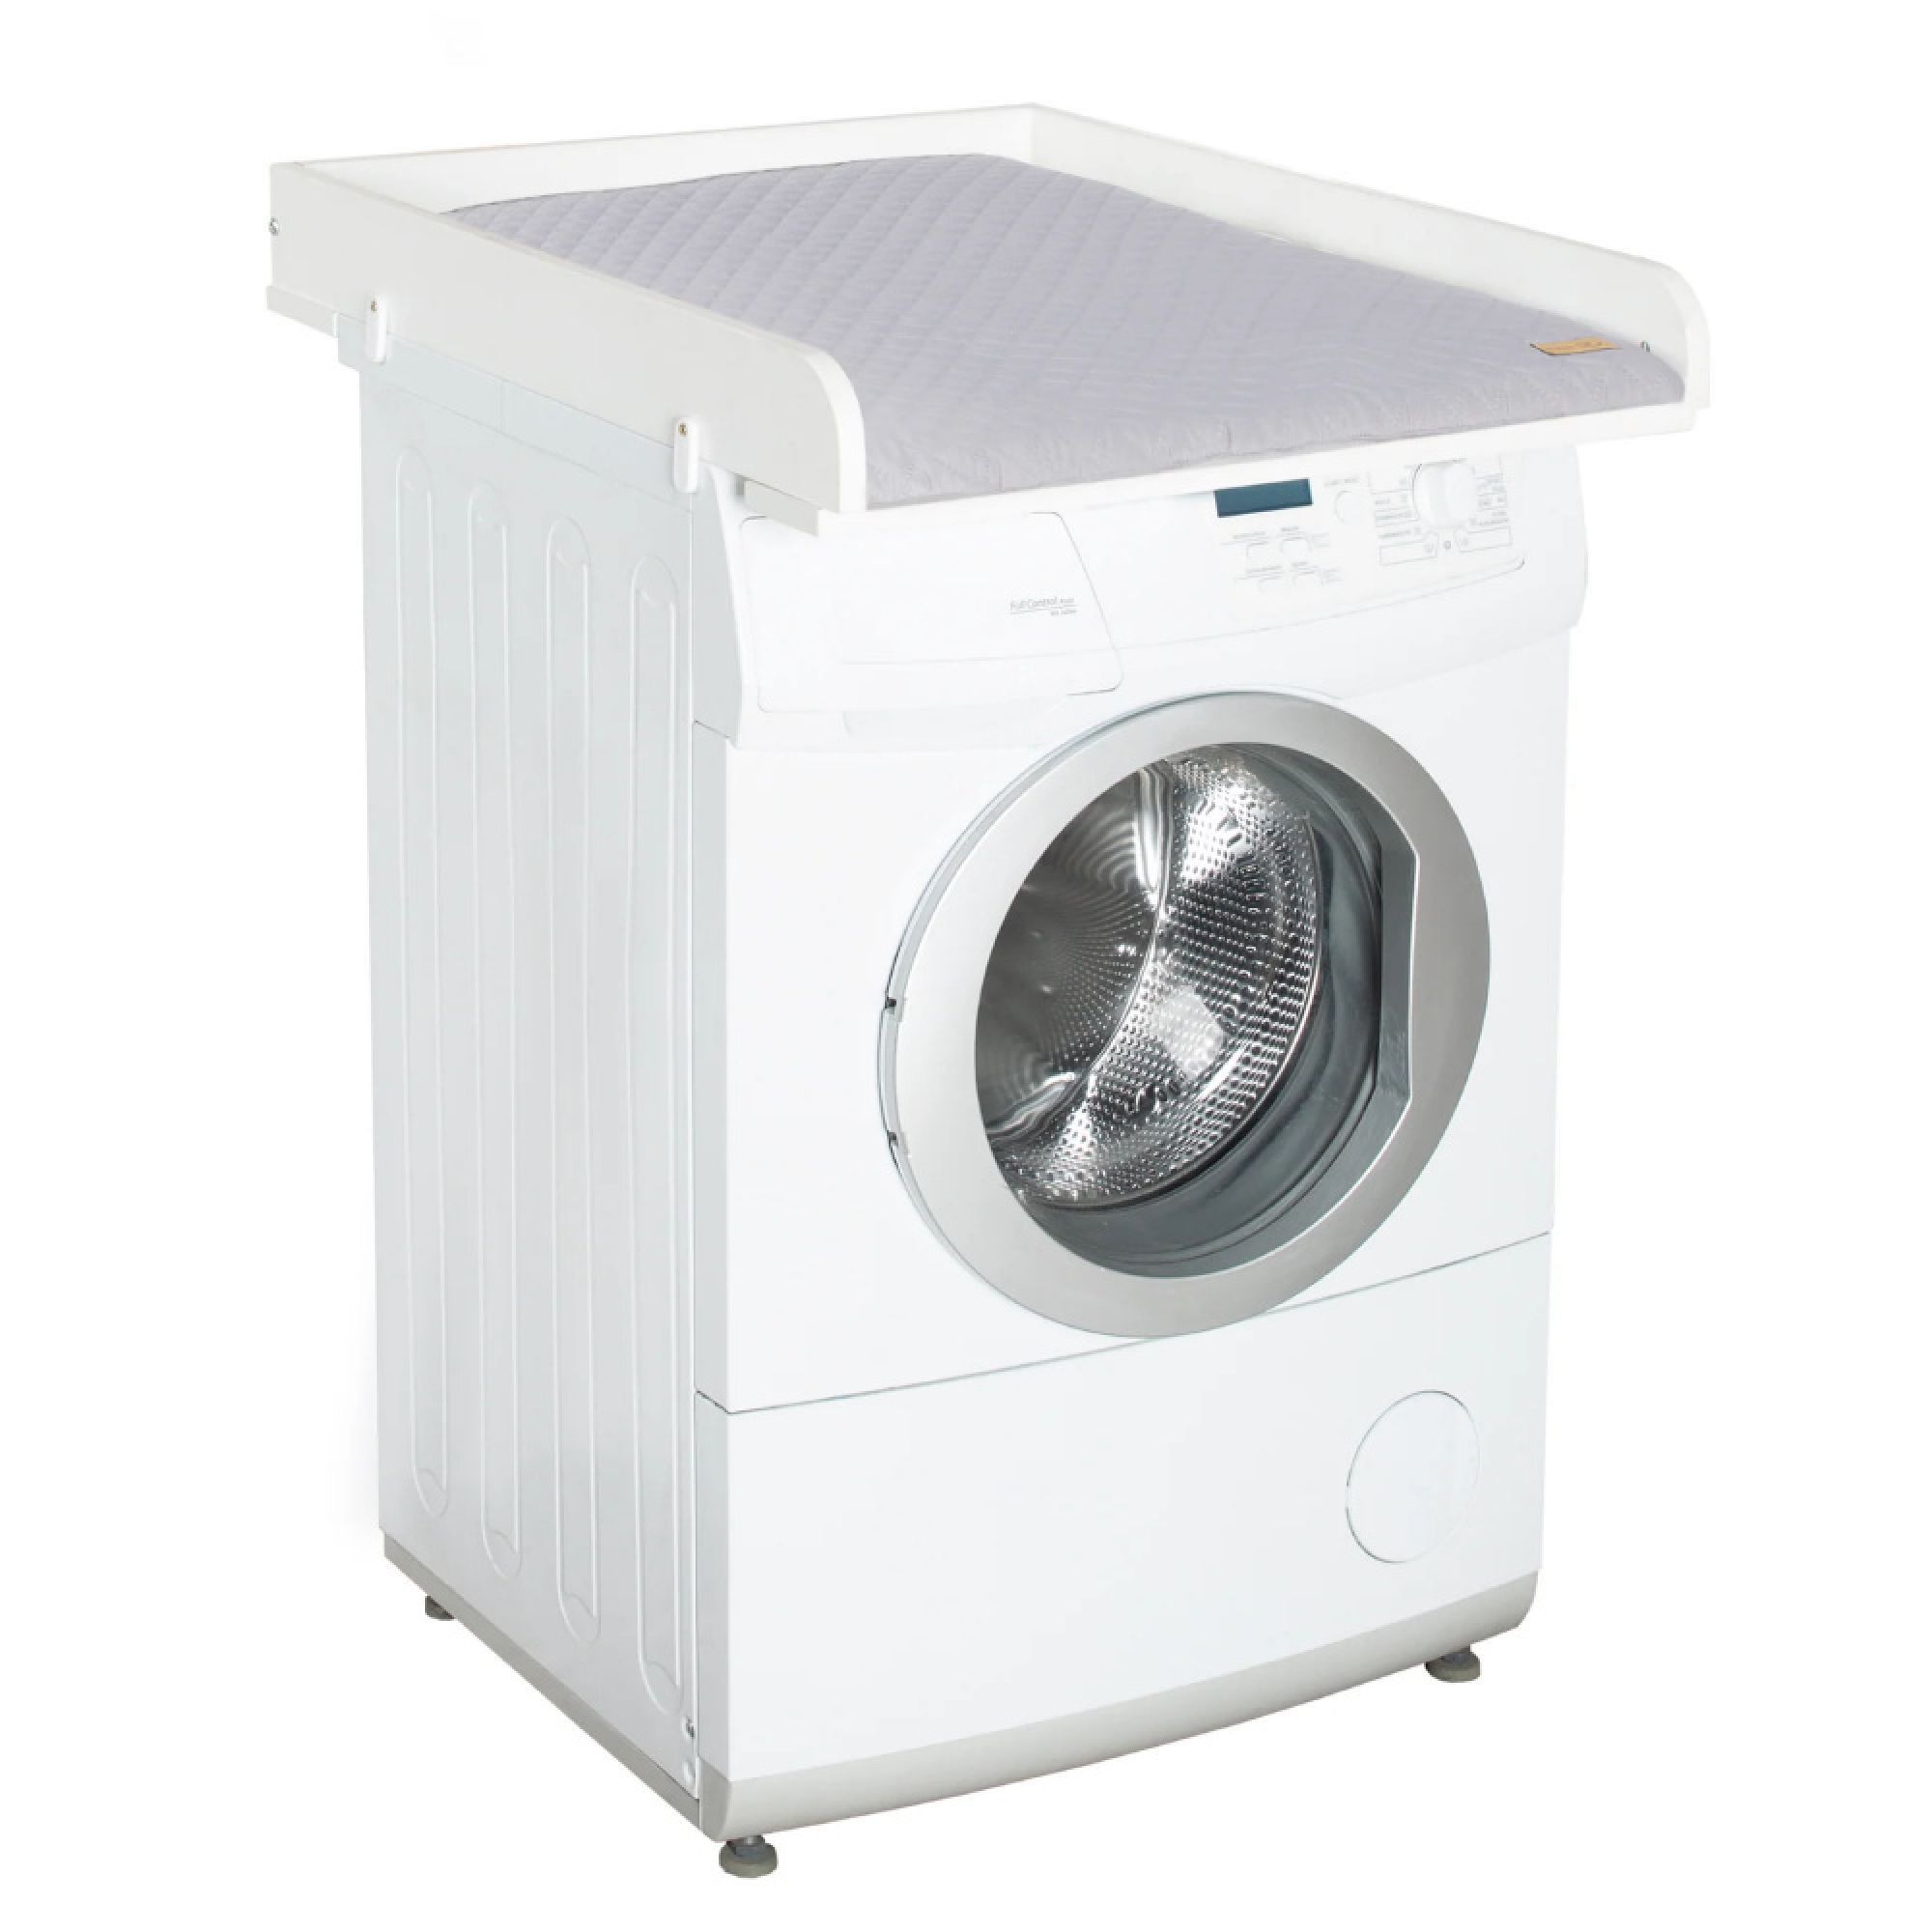 Plan à langer pour les machines à laver Roba style blanc - Made in Bébé